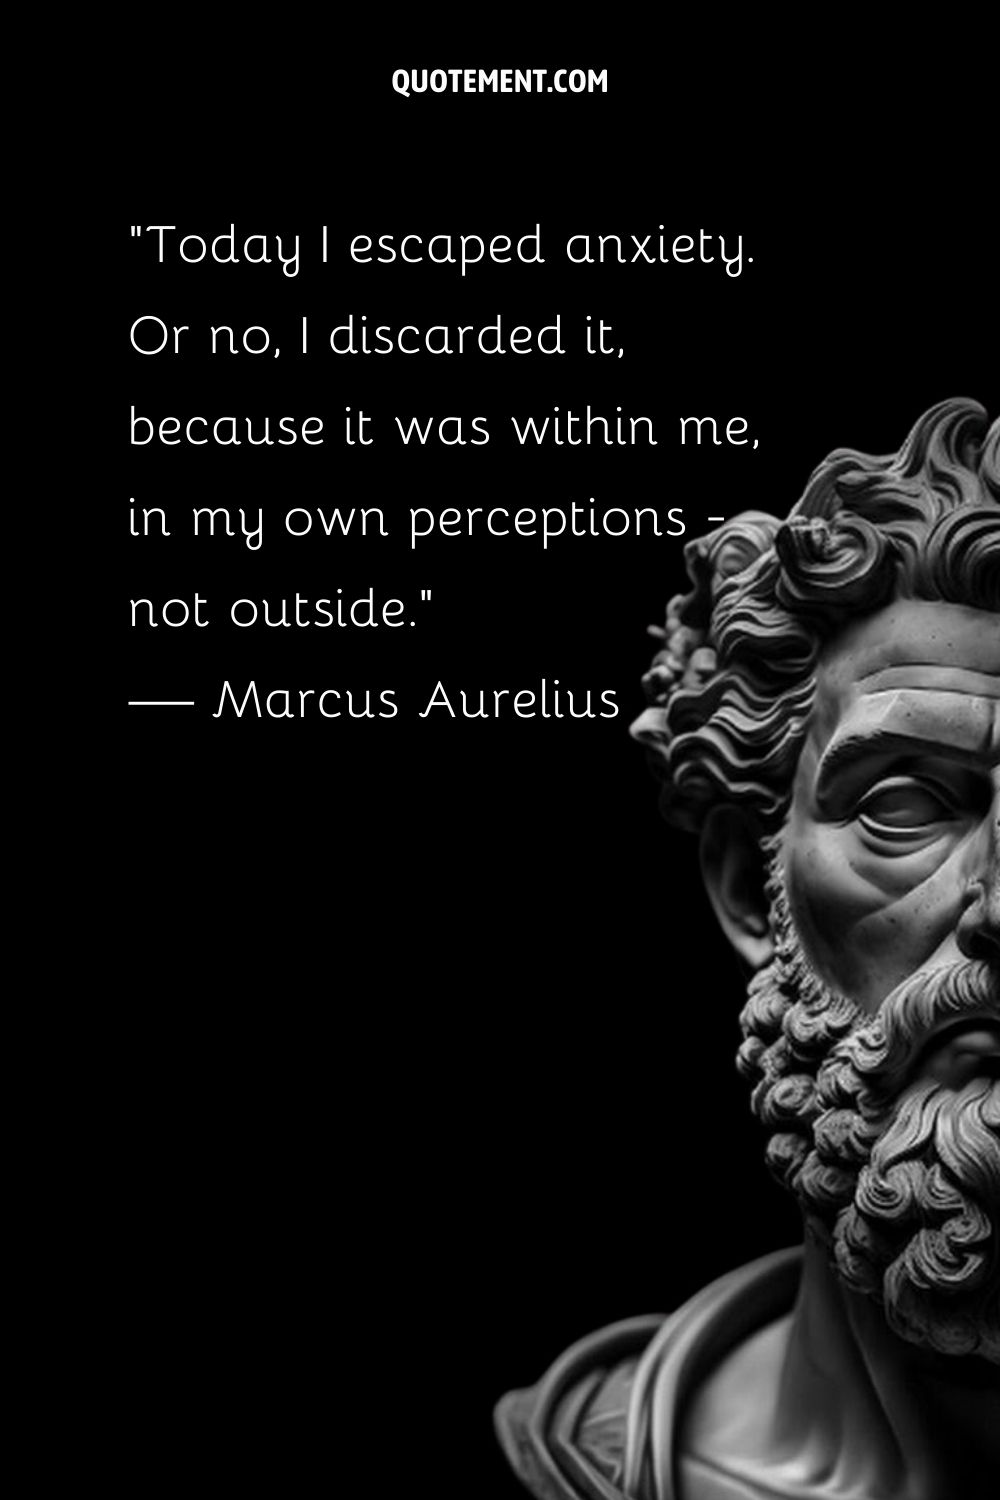 Serene Marcus Aurelius in stone.